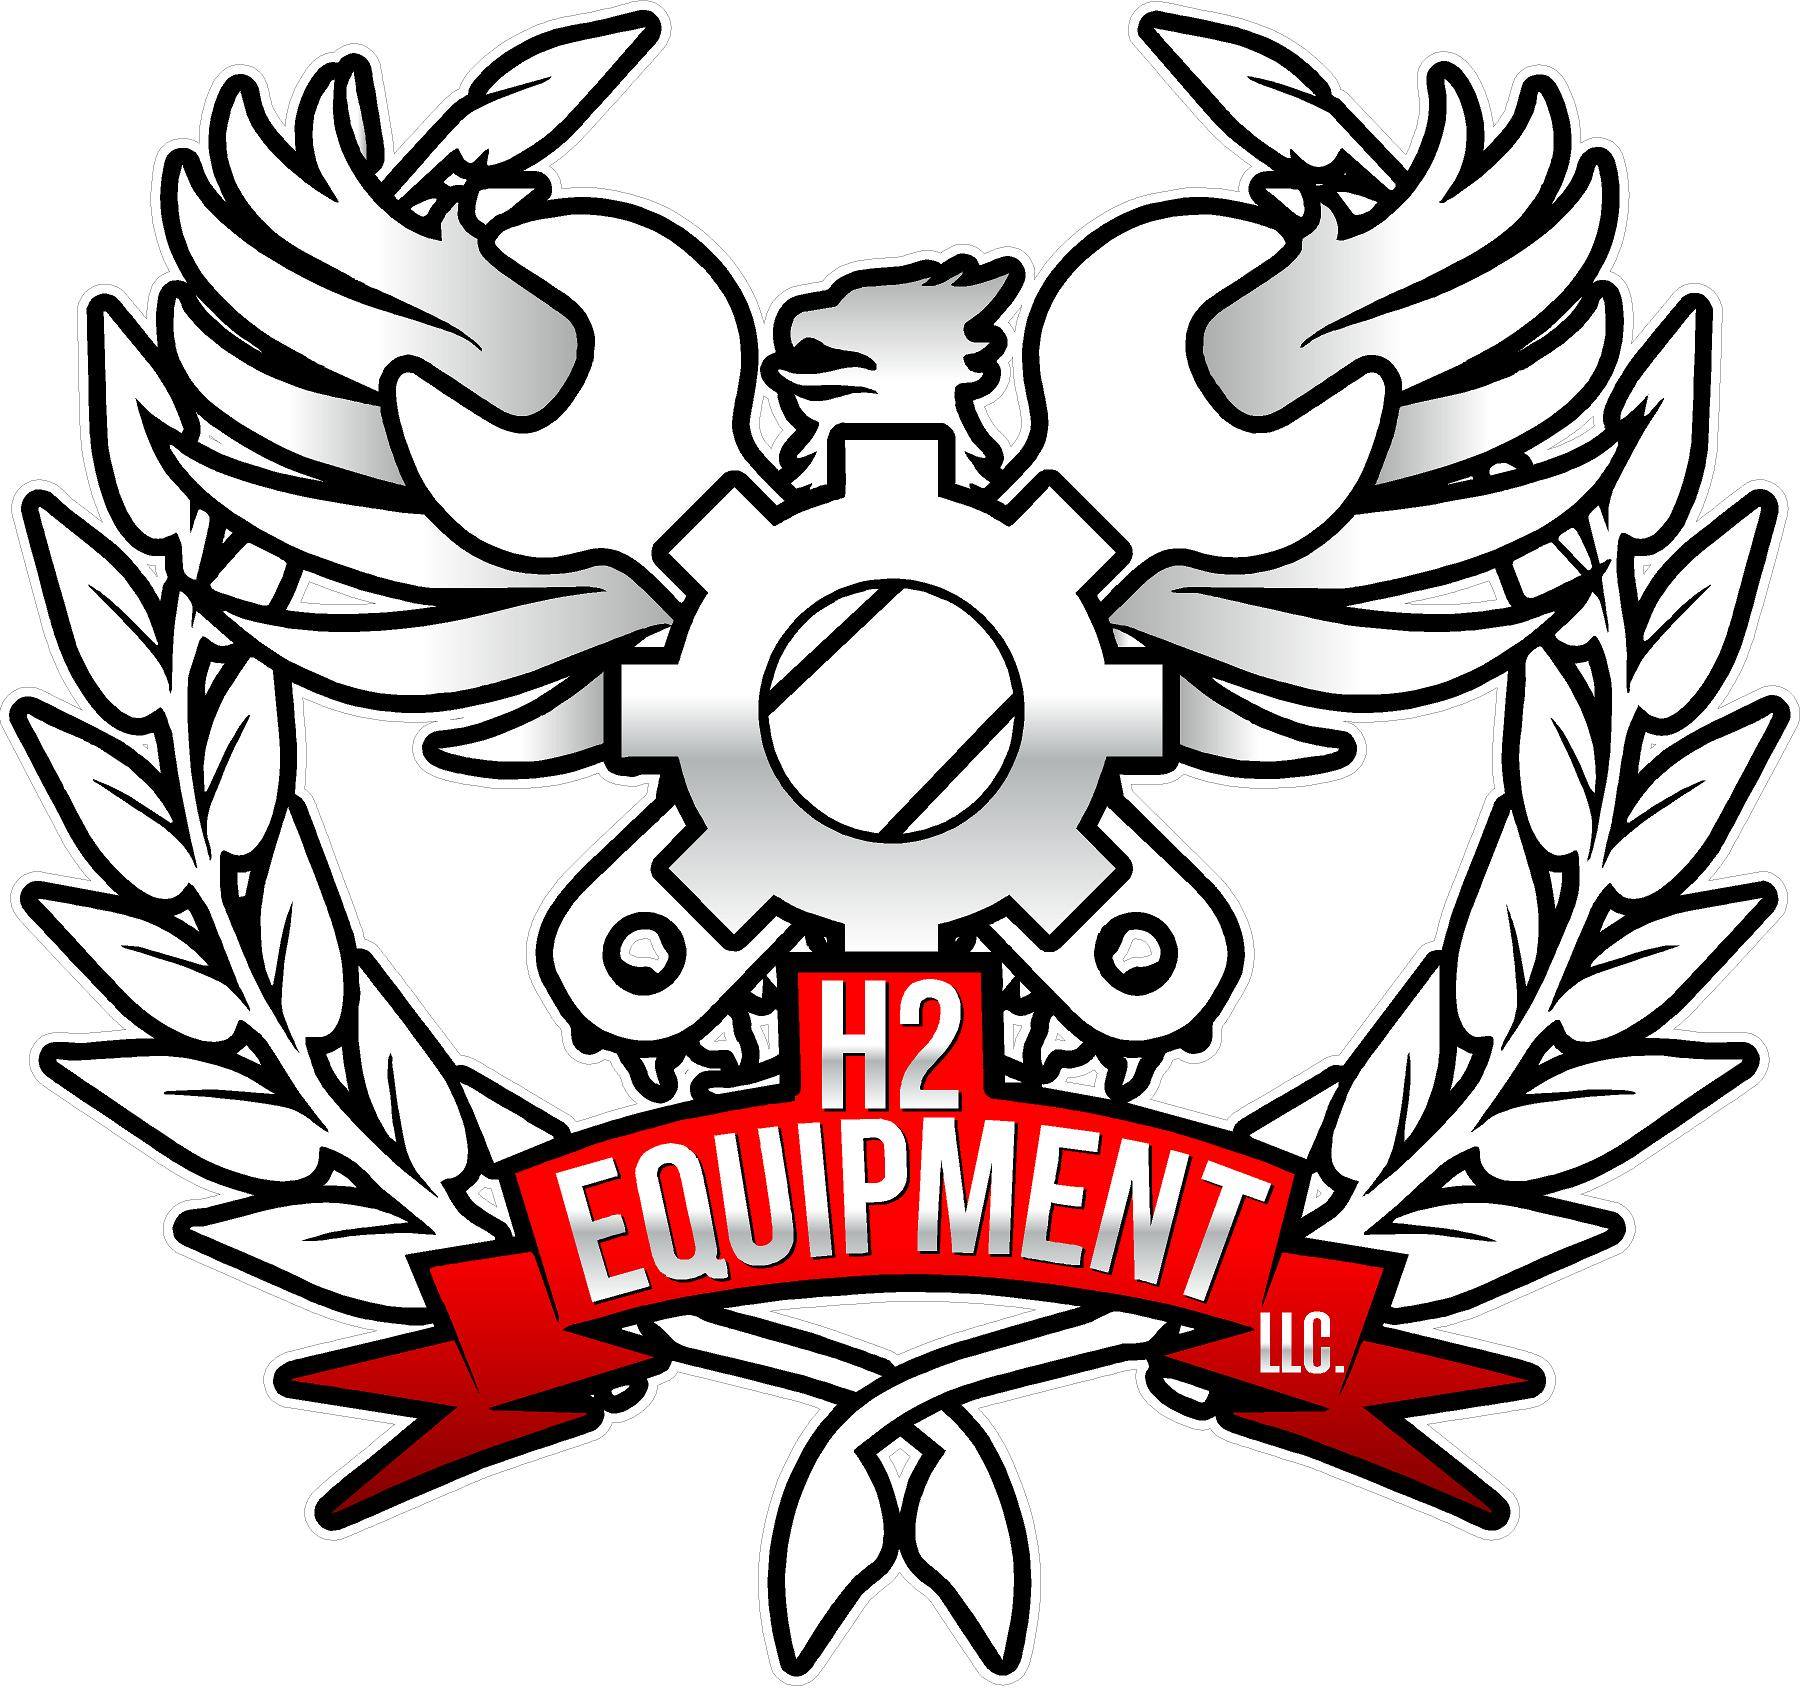 H2 Equipment, LLC